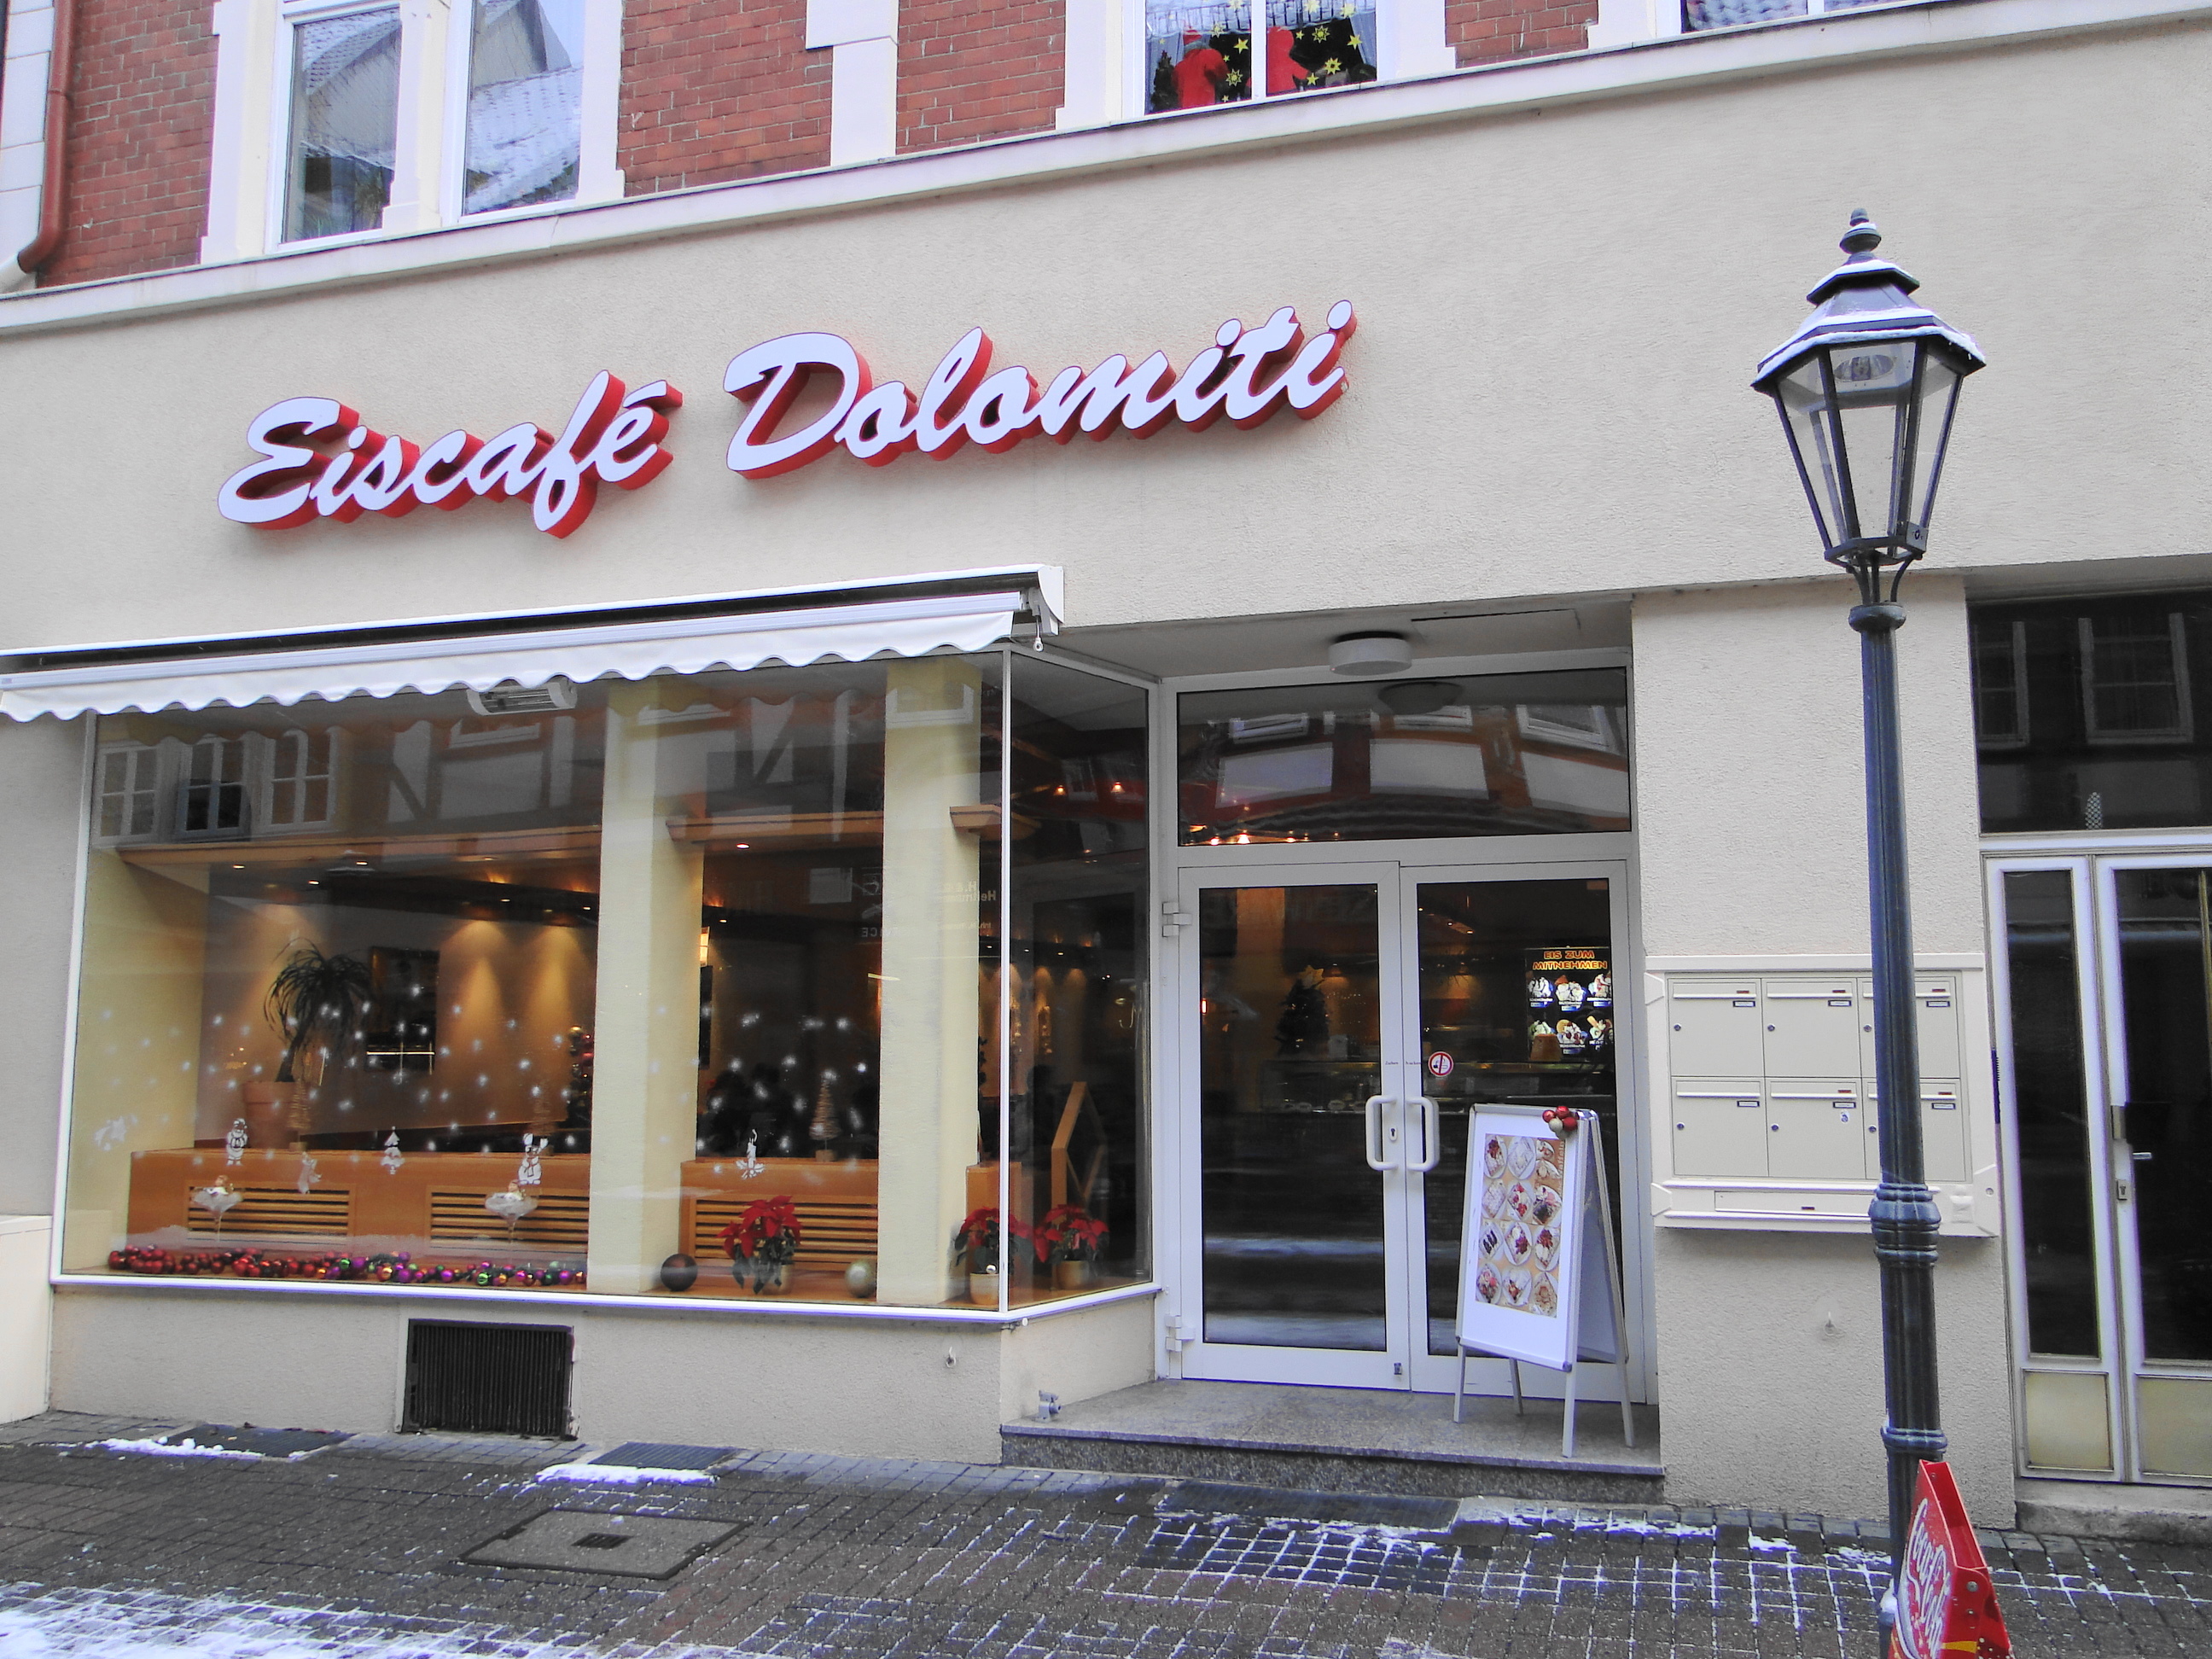 Eiscafe Dolomiti, Inh. De Pra Roy in Einbeck, Marktstr. 9